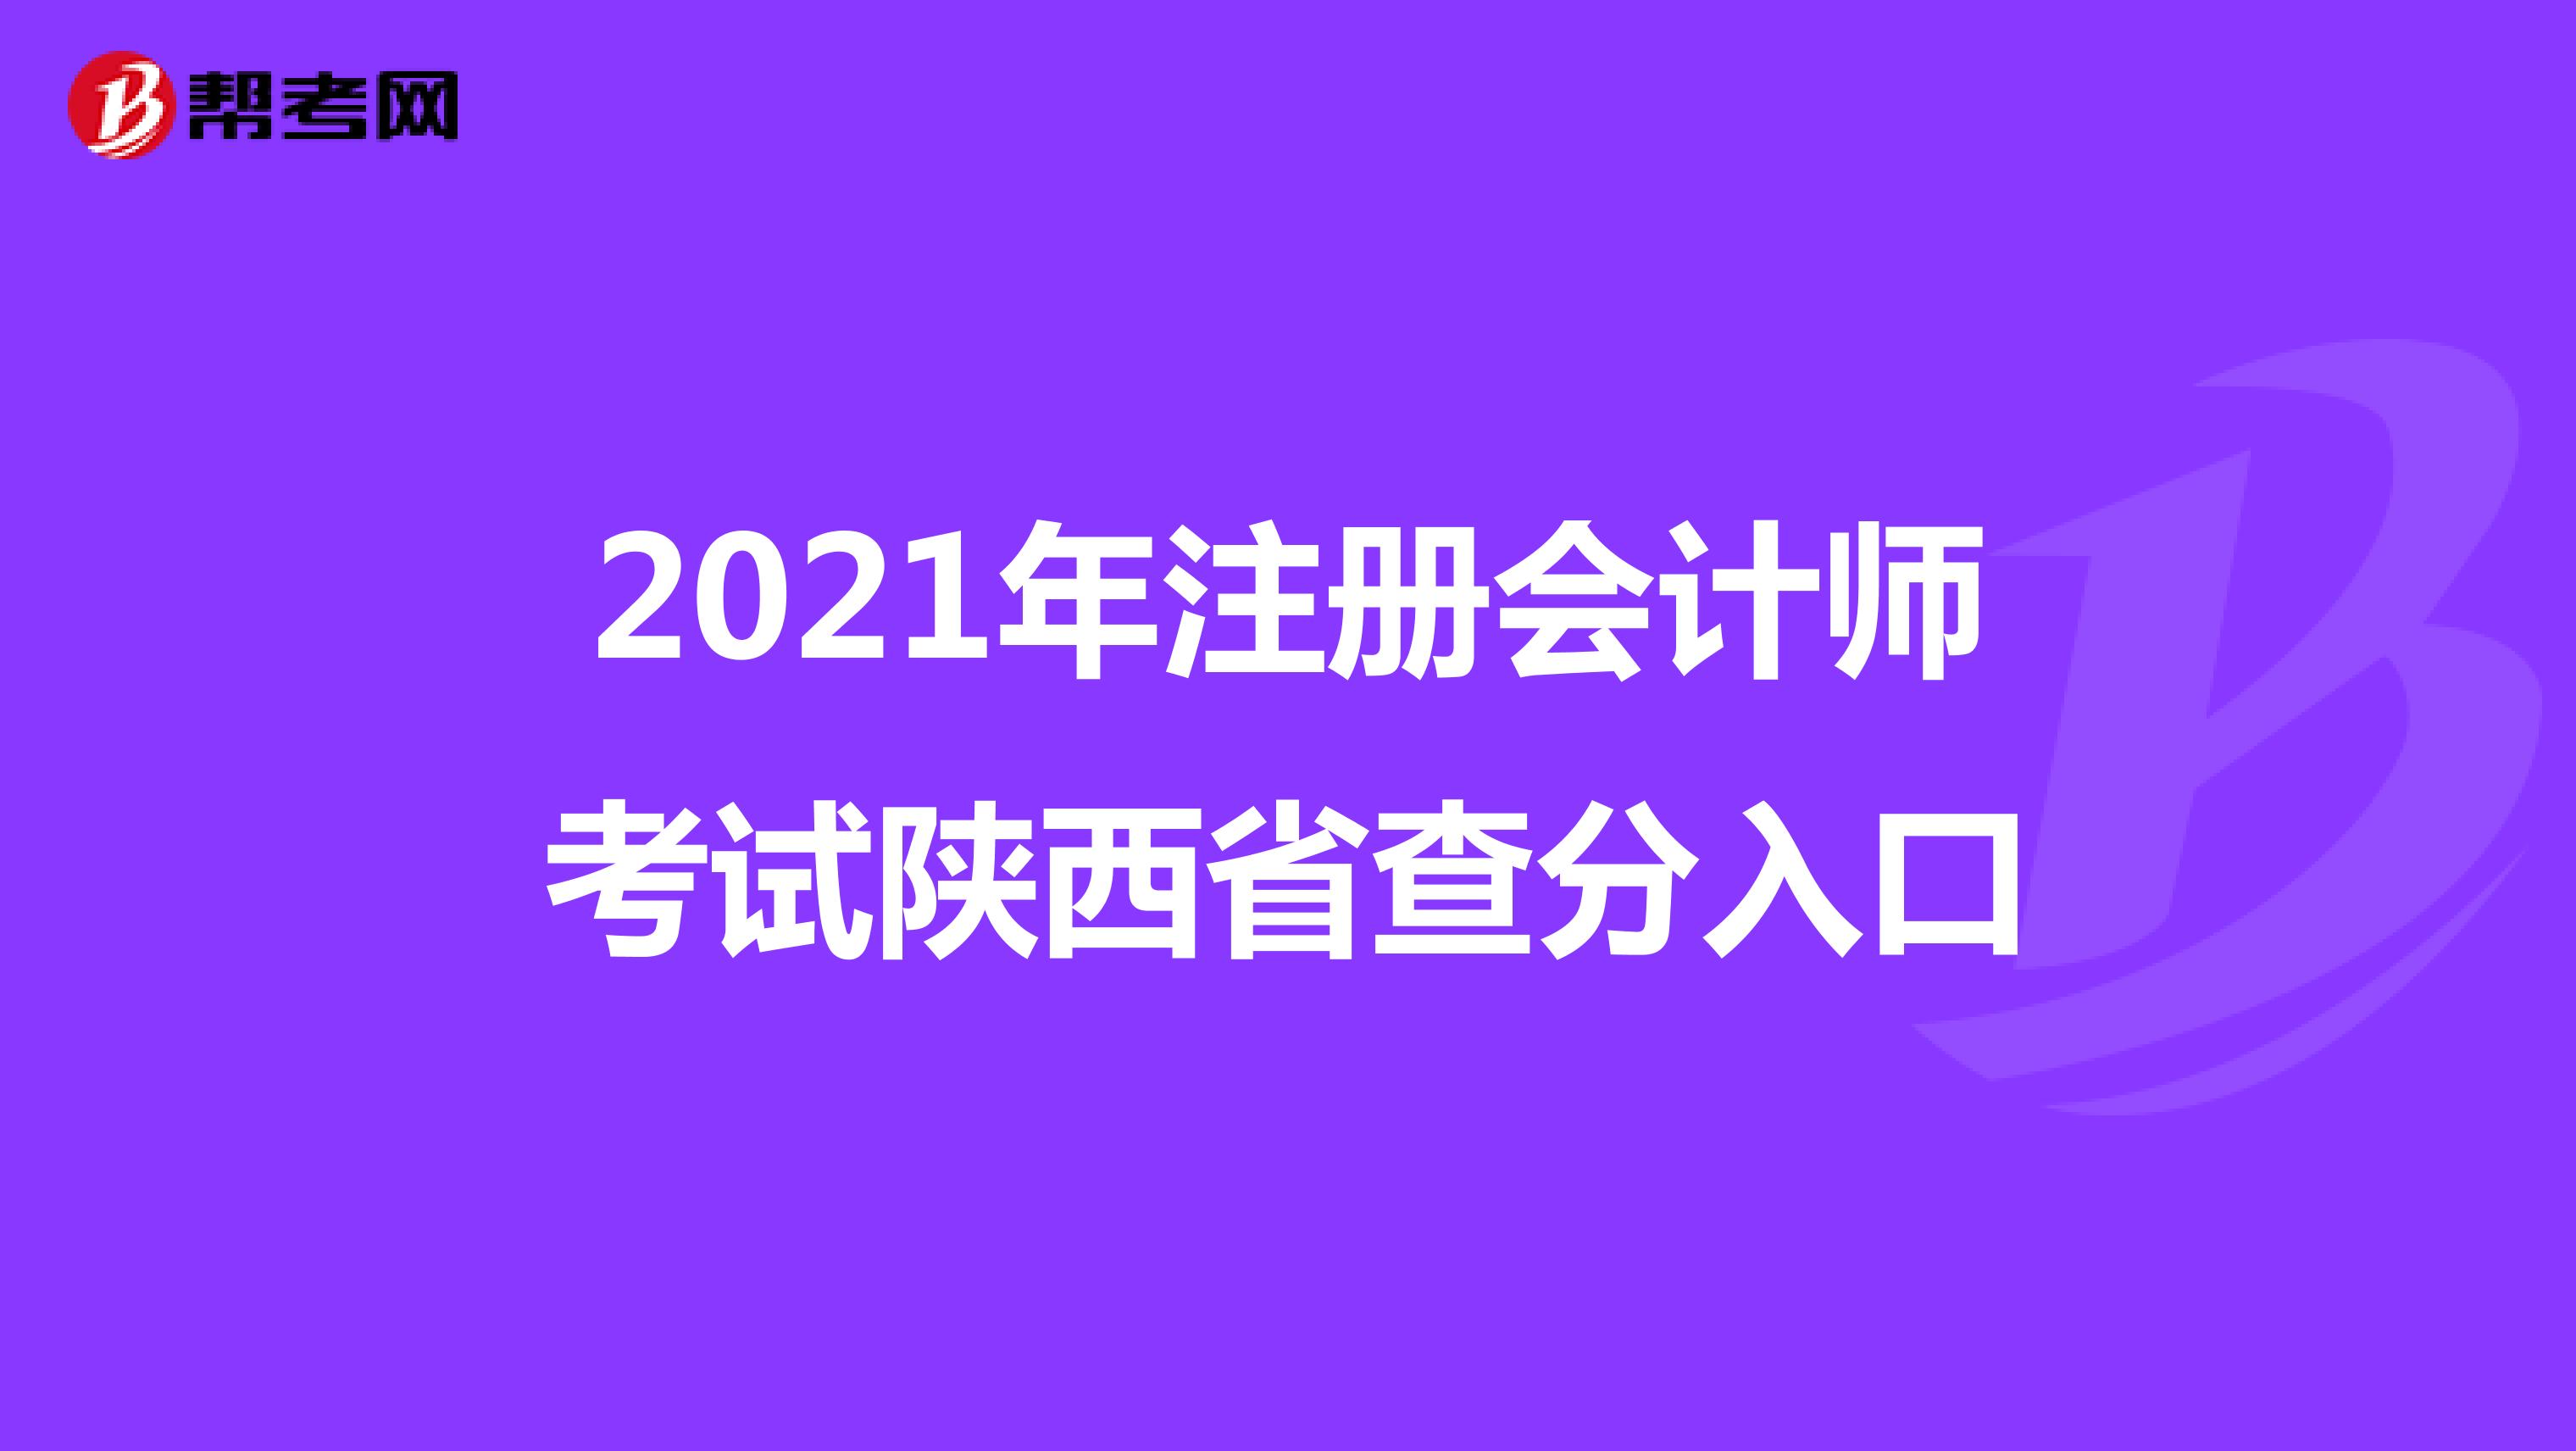 2021年注册会计师考试陕西省查分入口